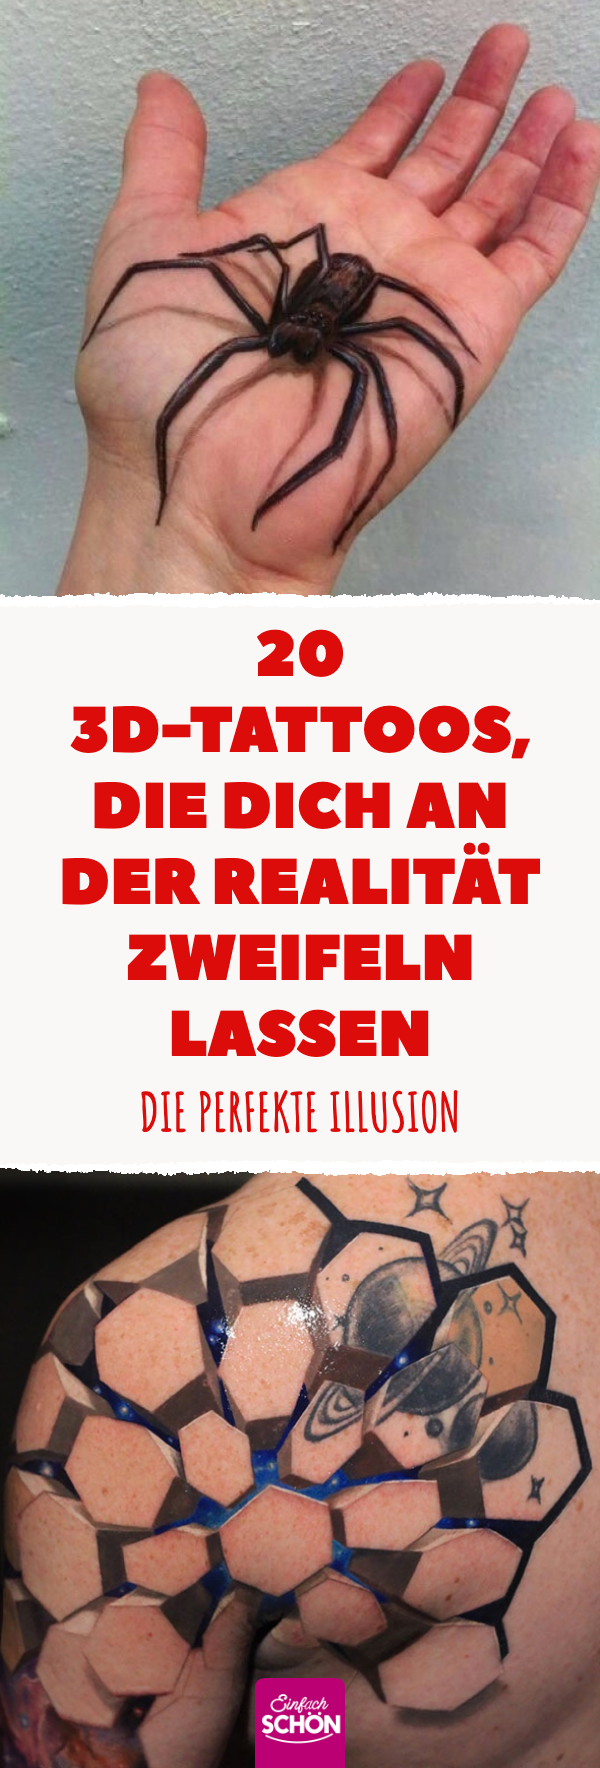 17 unfassbar realistische 3D-Tattoos